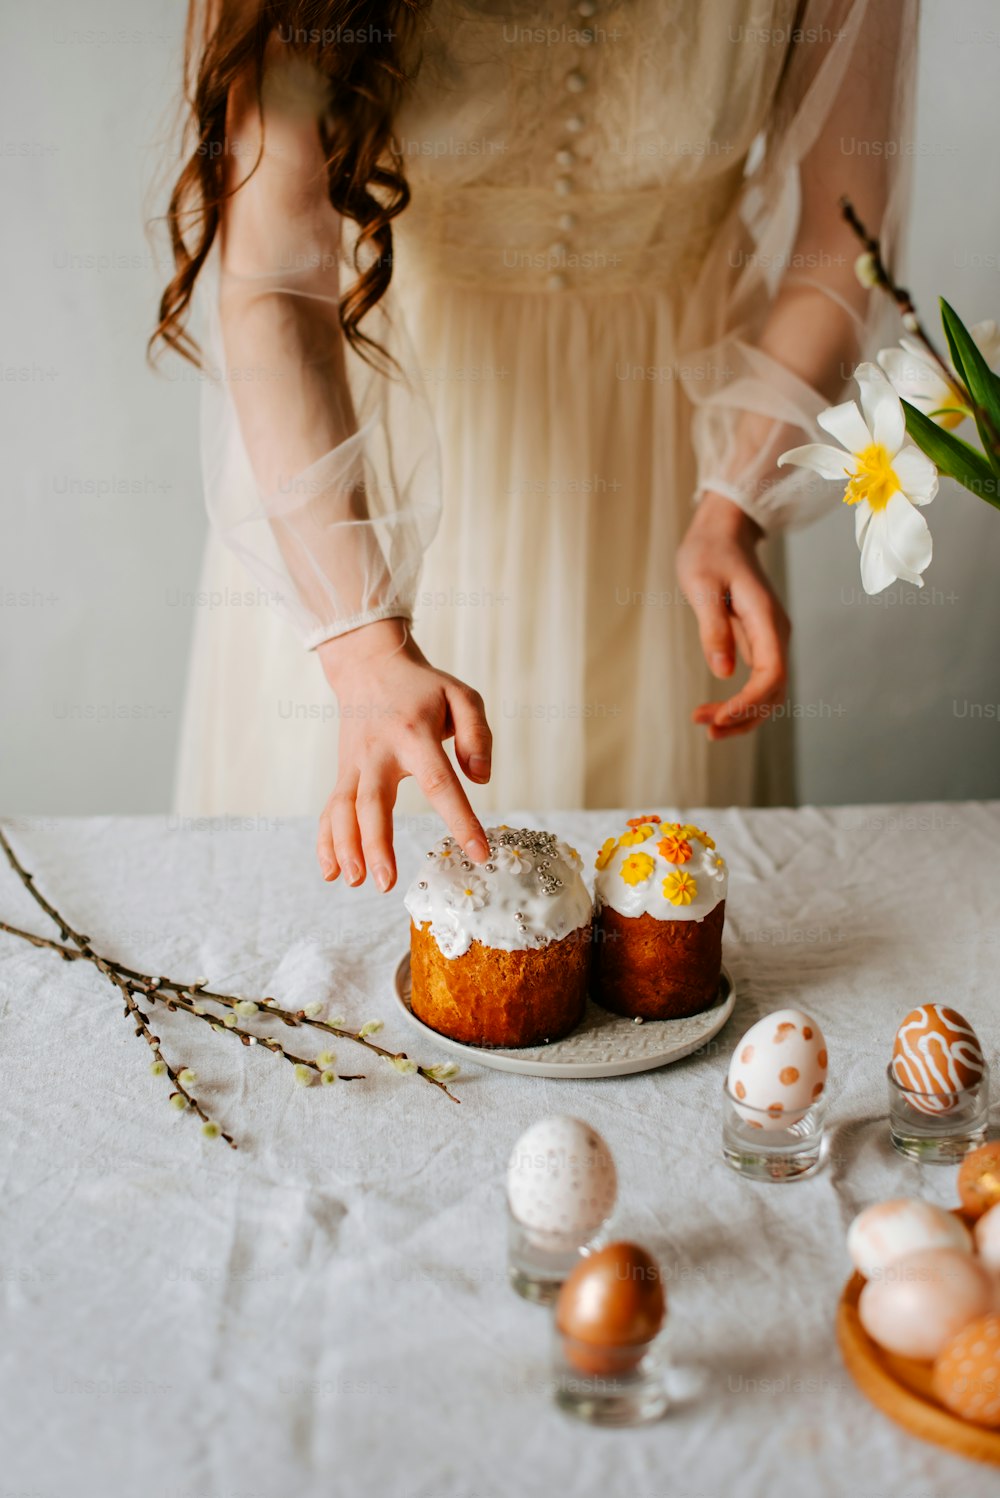 Una mujer con un vestido blanco poniendo la guinda a un pastel